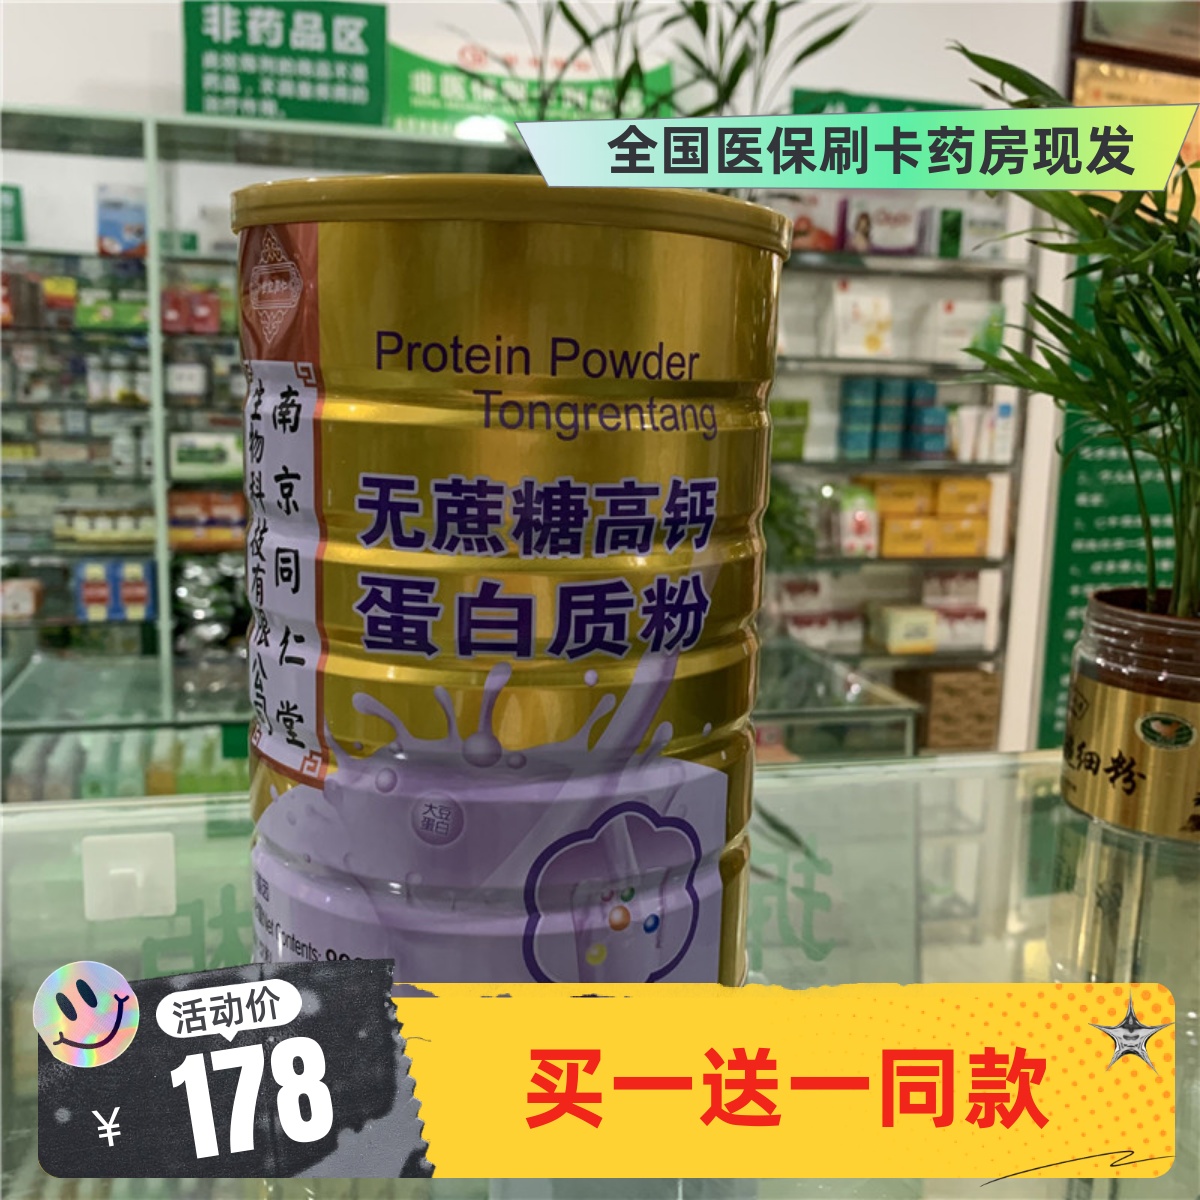 【买1送1同款】南京同仁堂无蔗糖高钙蛋白质粉900g实体药房同步销